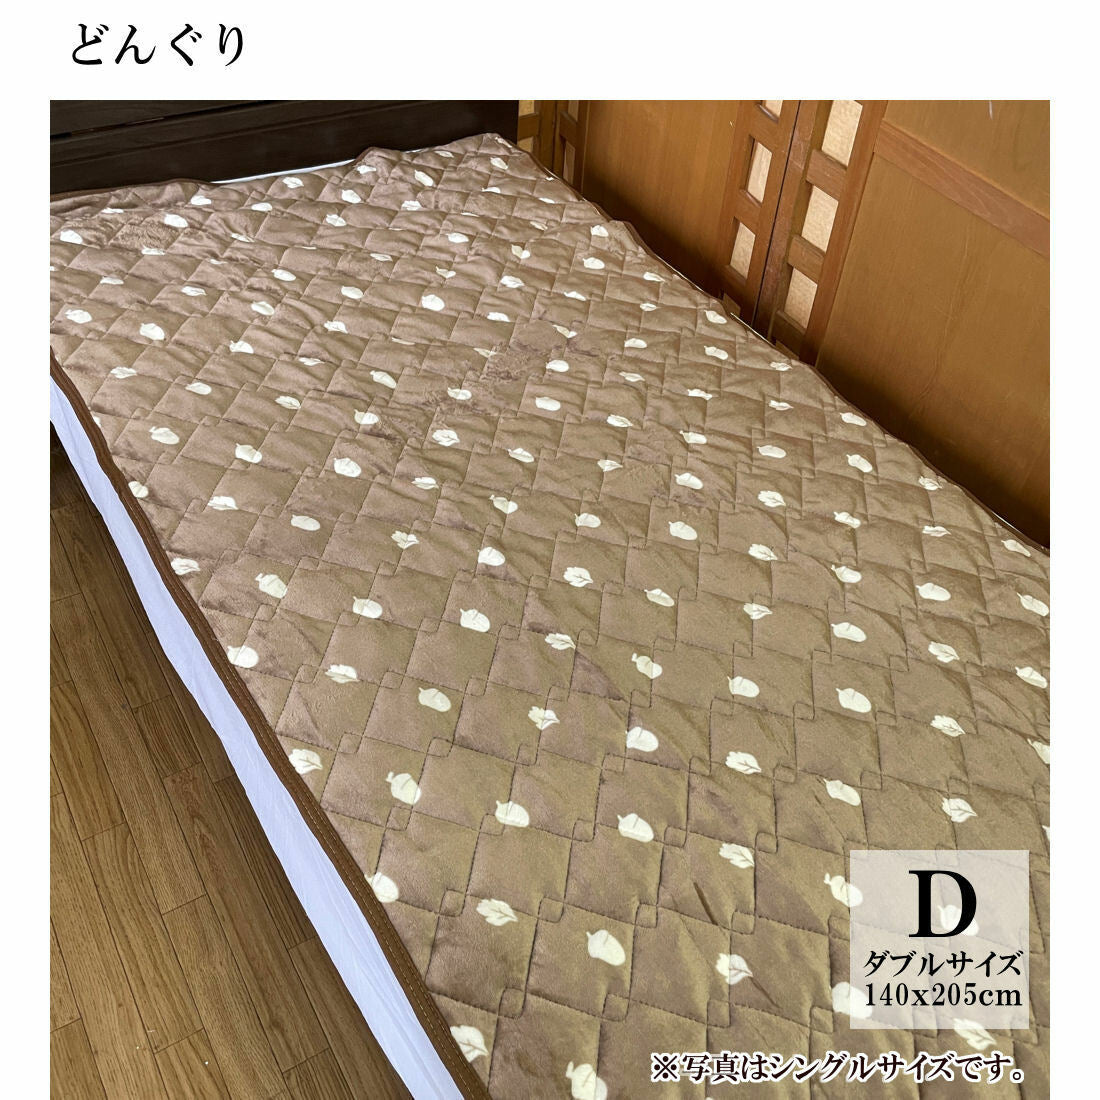 ソフトクール敷パッド シングル 100×205cm 無地ポリエステルナイロン素材のひんやりパッド